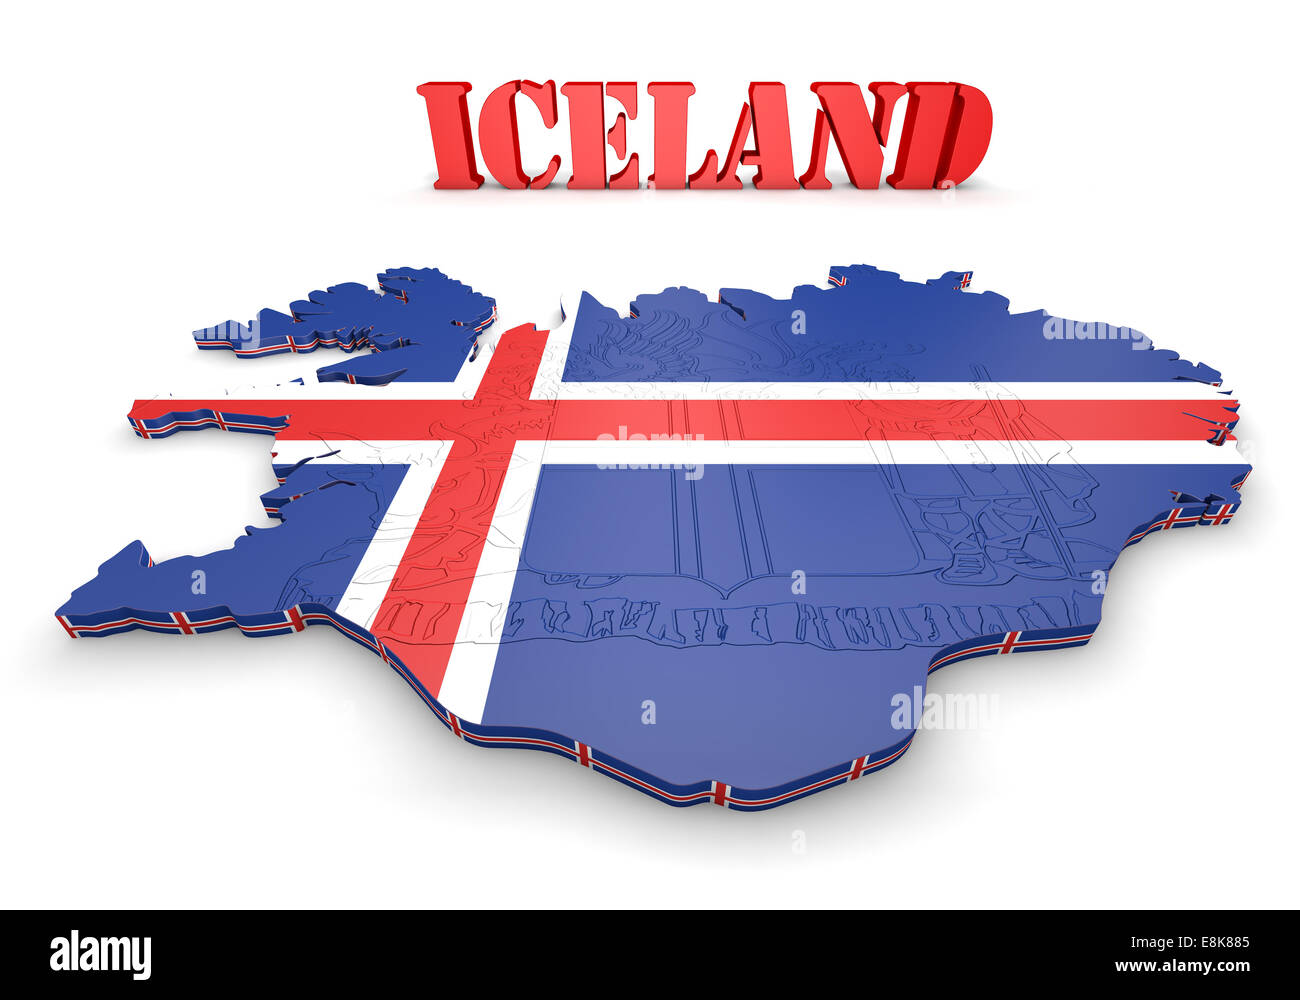 Mappa 3D illustrazione di Islanda con bandiera e stemma Foto Stock